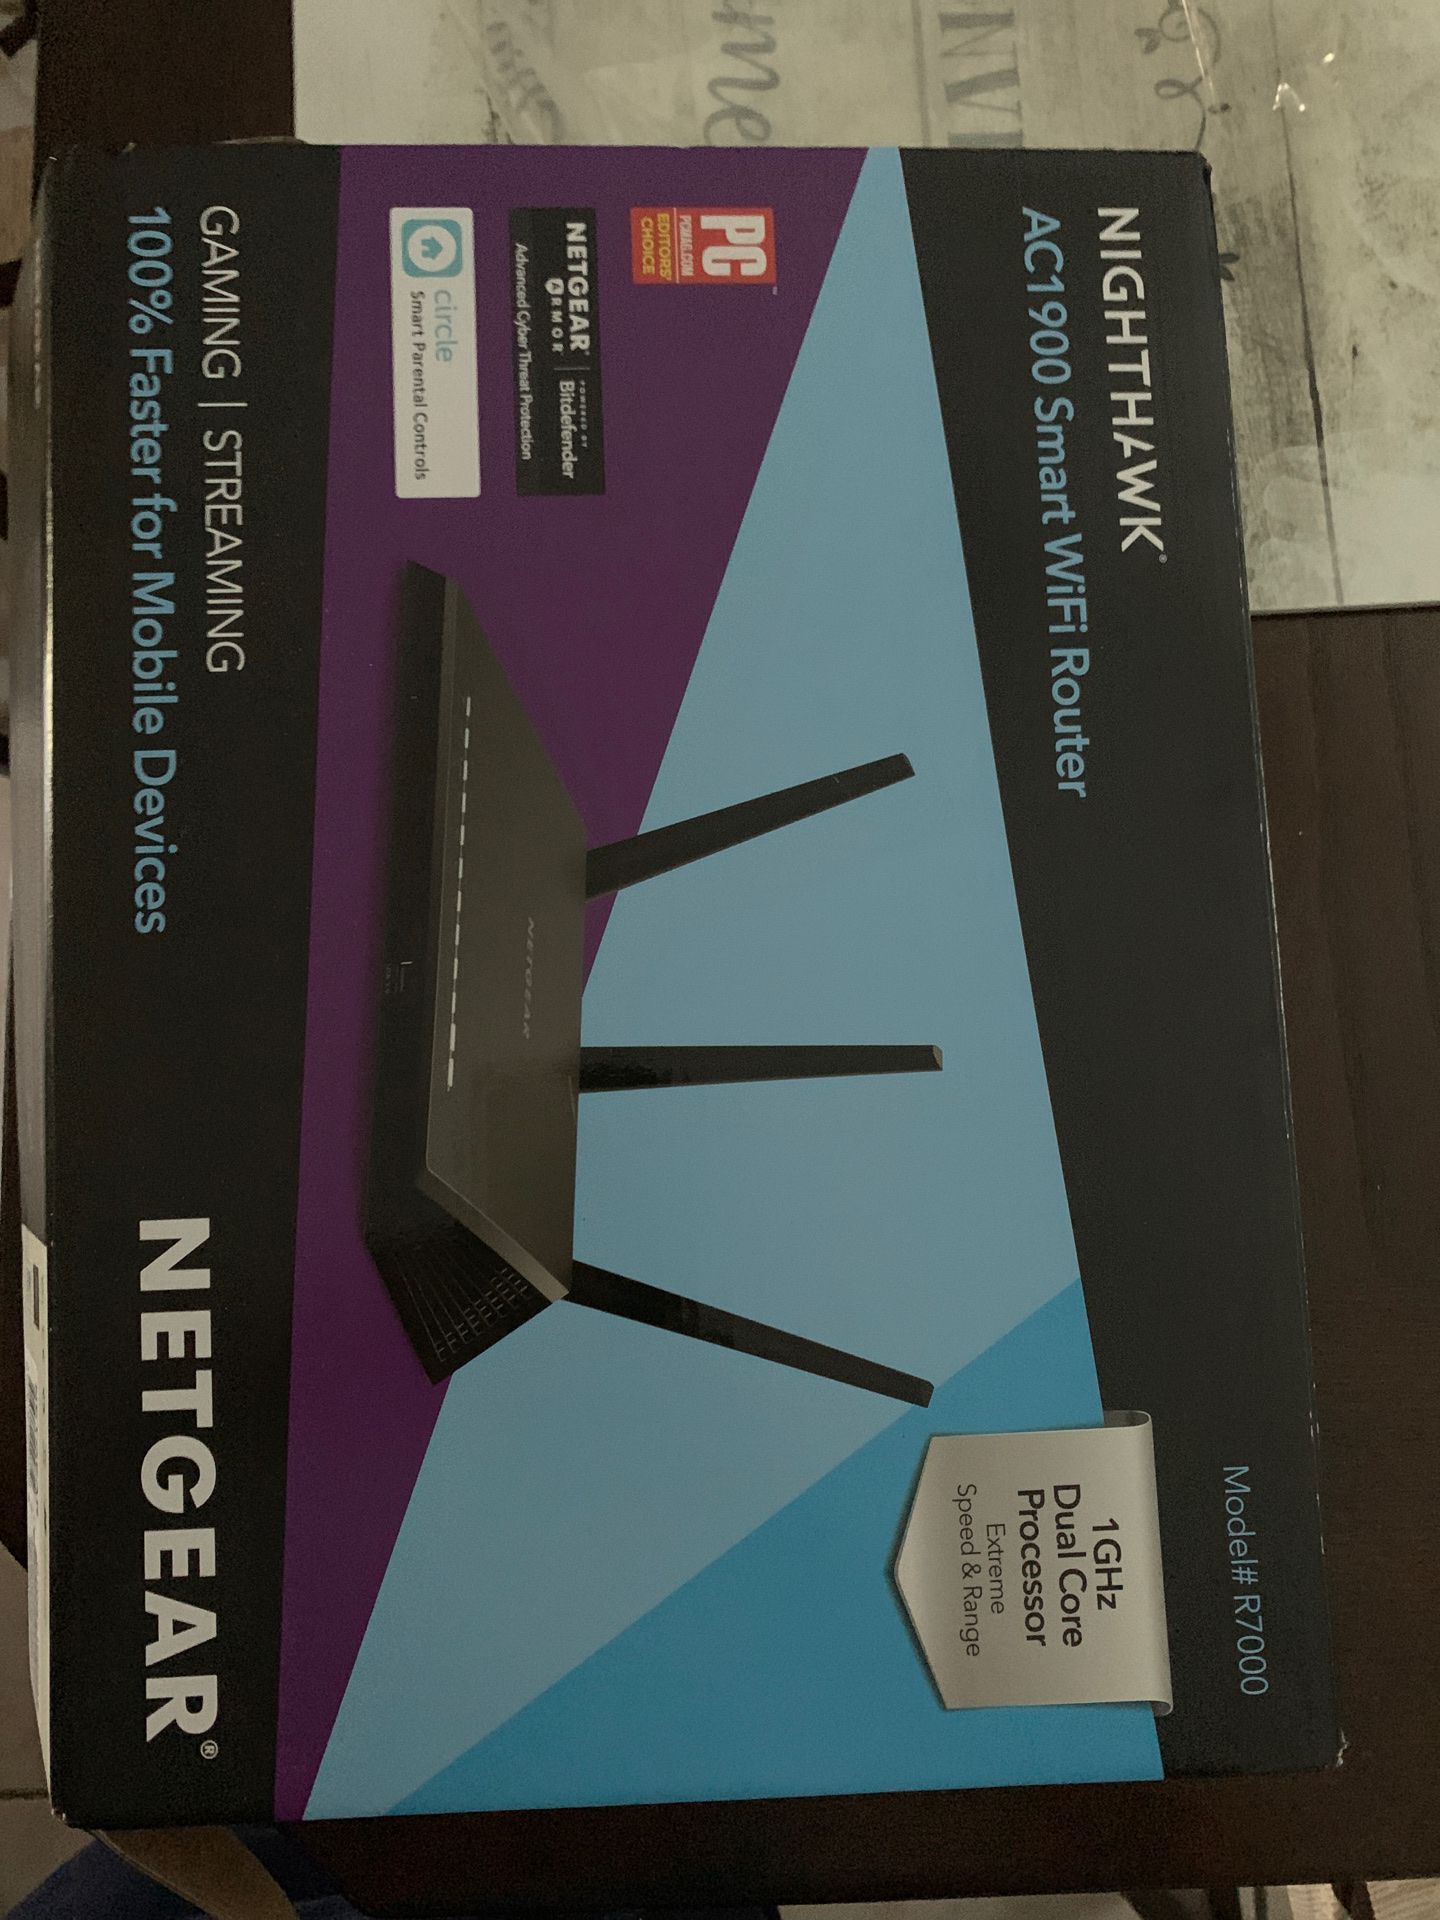 NETGEAR - Nighthawk AC1900 Dual-Band Wi-Fi 5 Router - Black